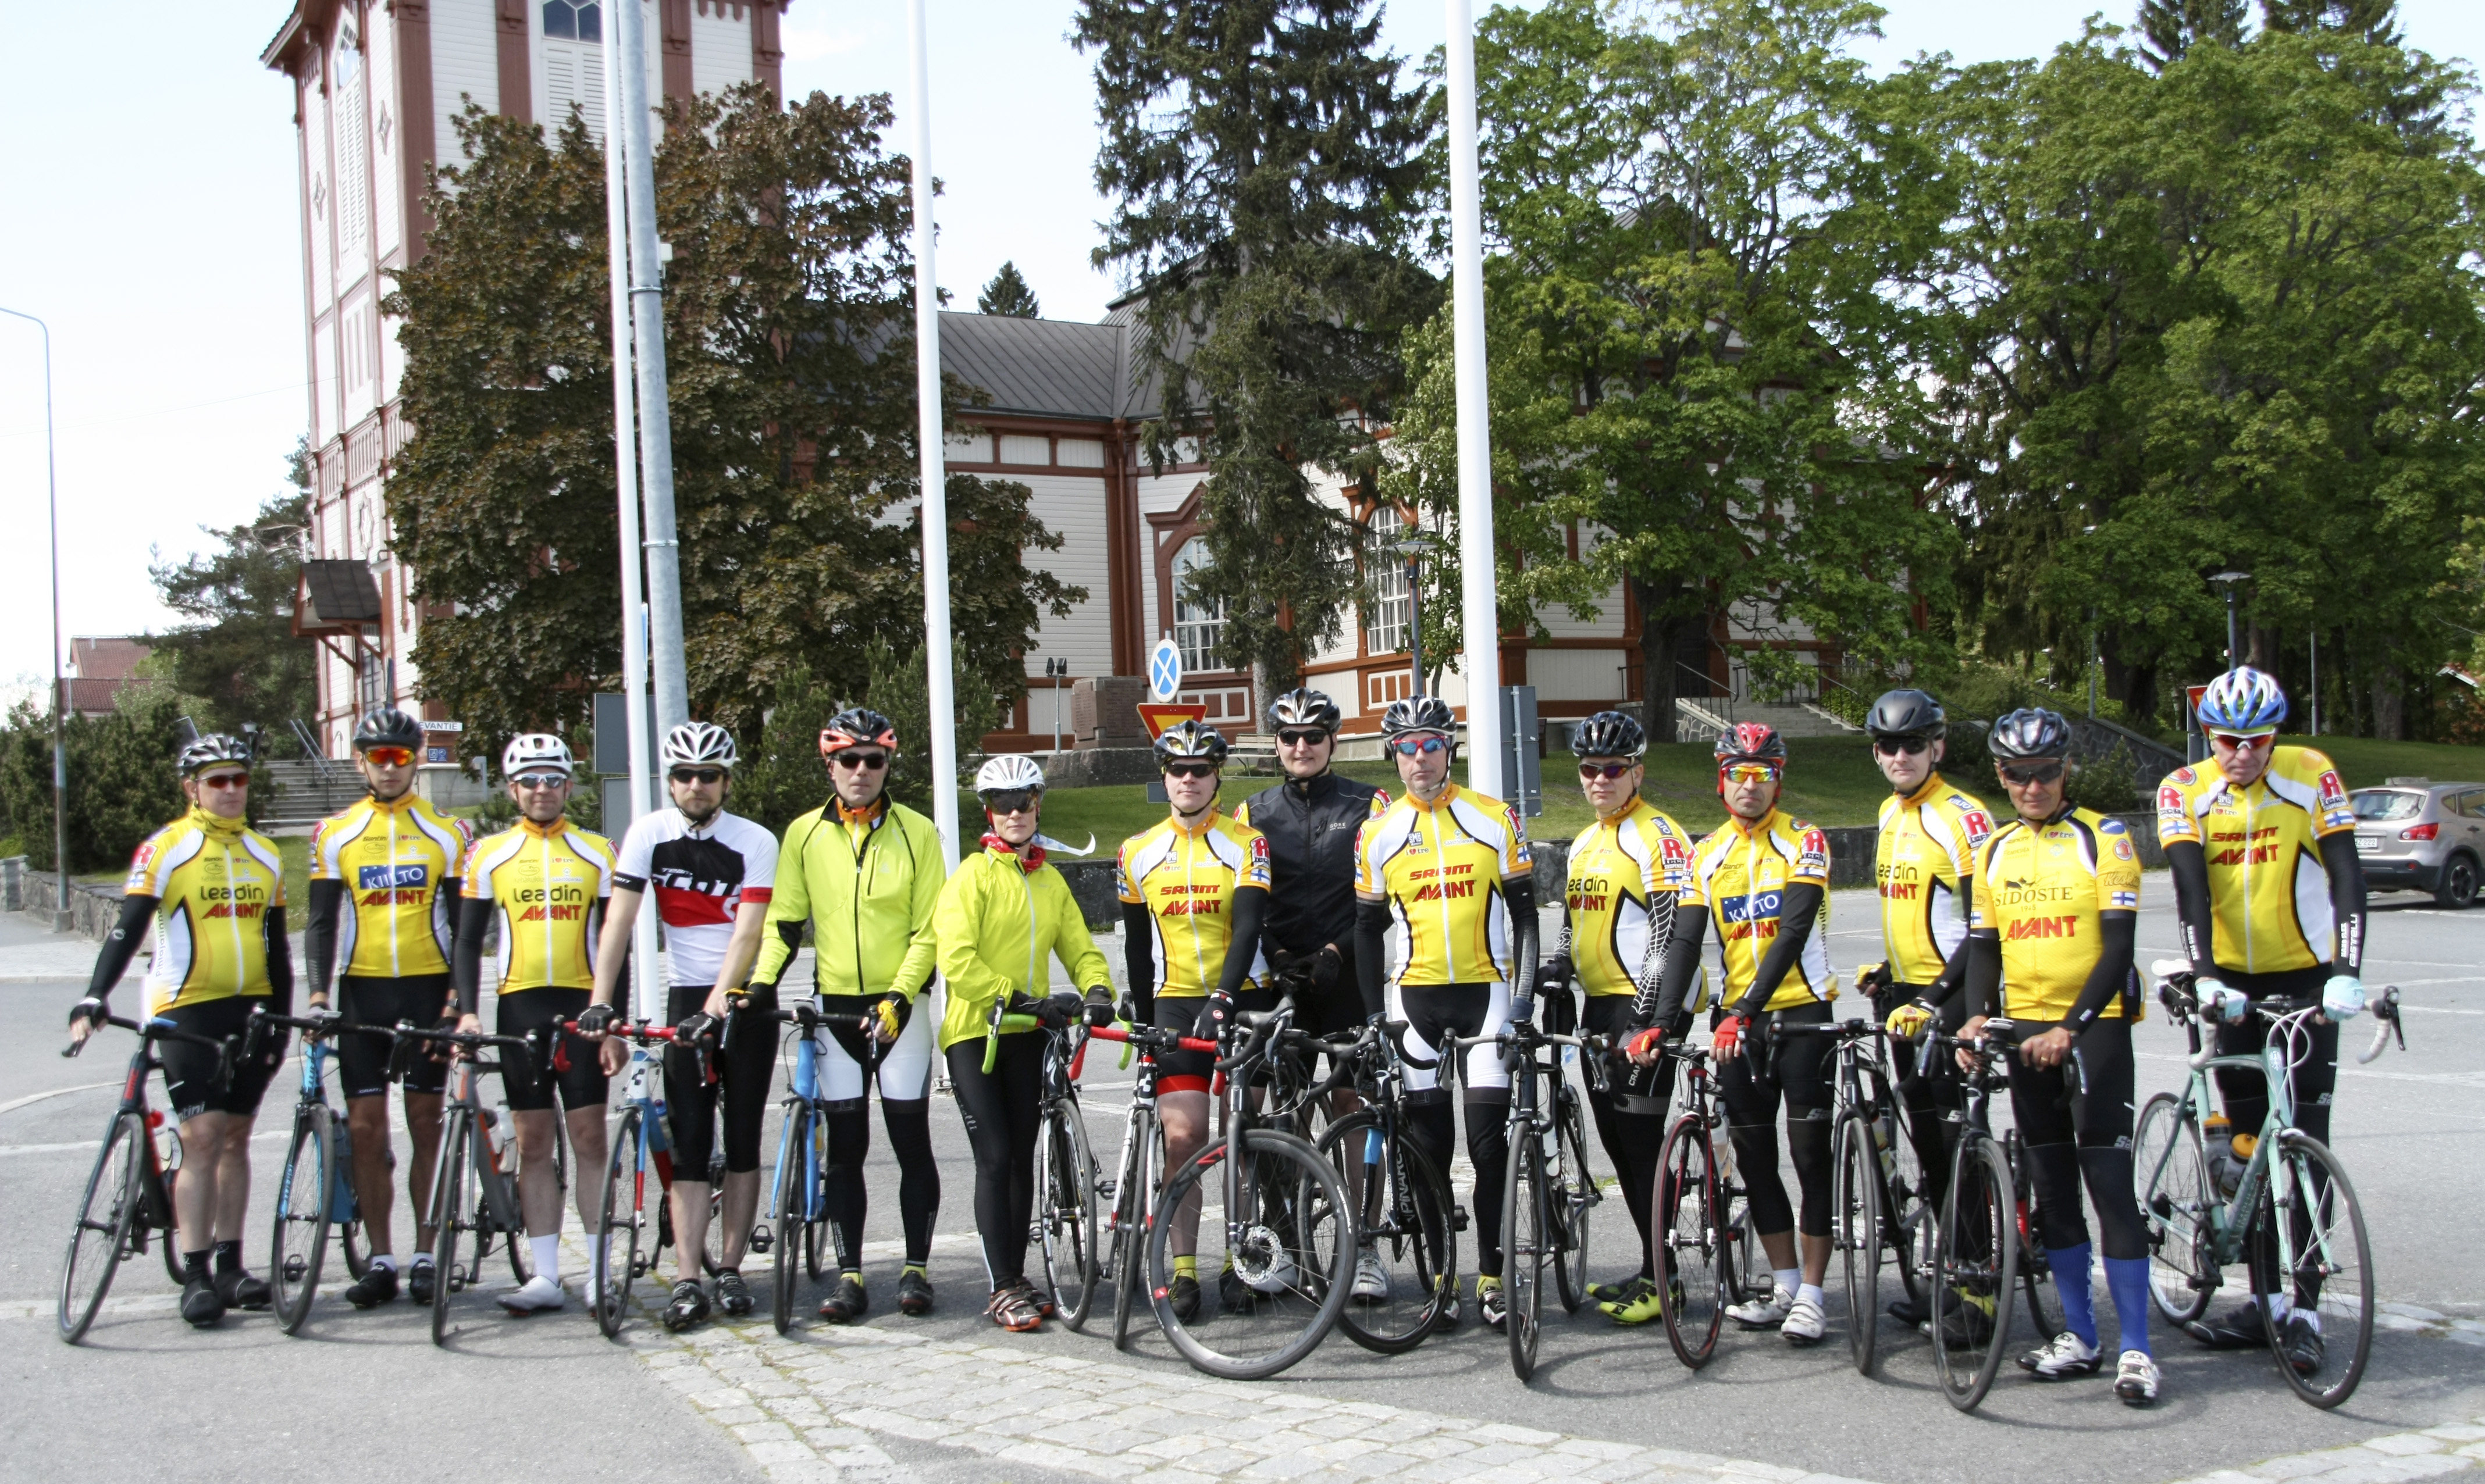 Kaupin Kanuunoista Tampereelta osallistui seitsemän kirkon pyörälenkille 14 pyöräilijää tänän vuonna.